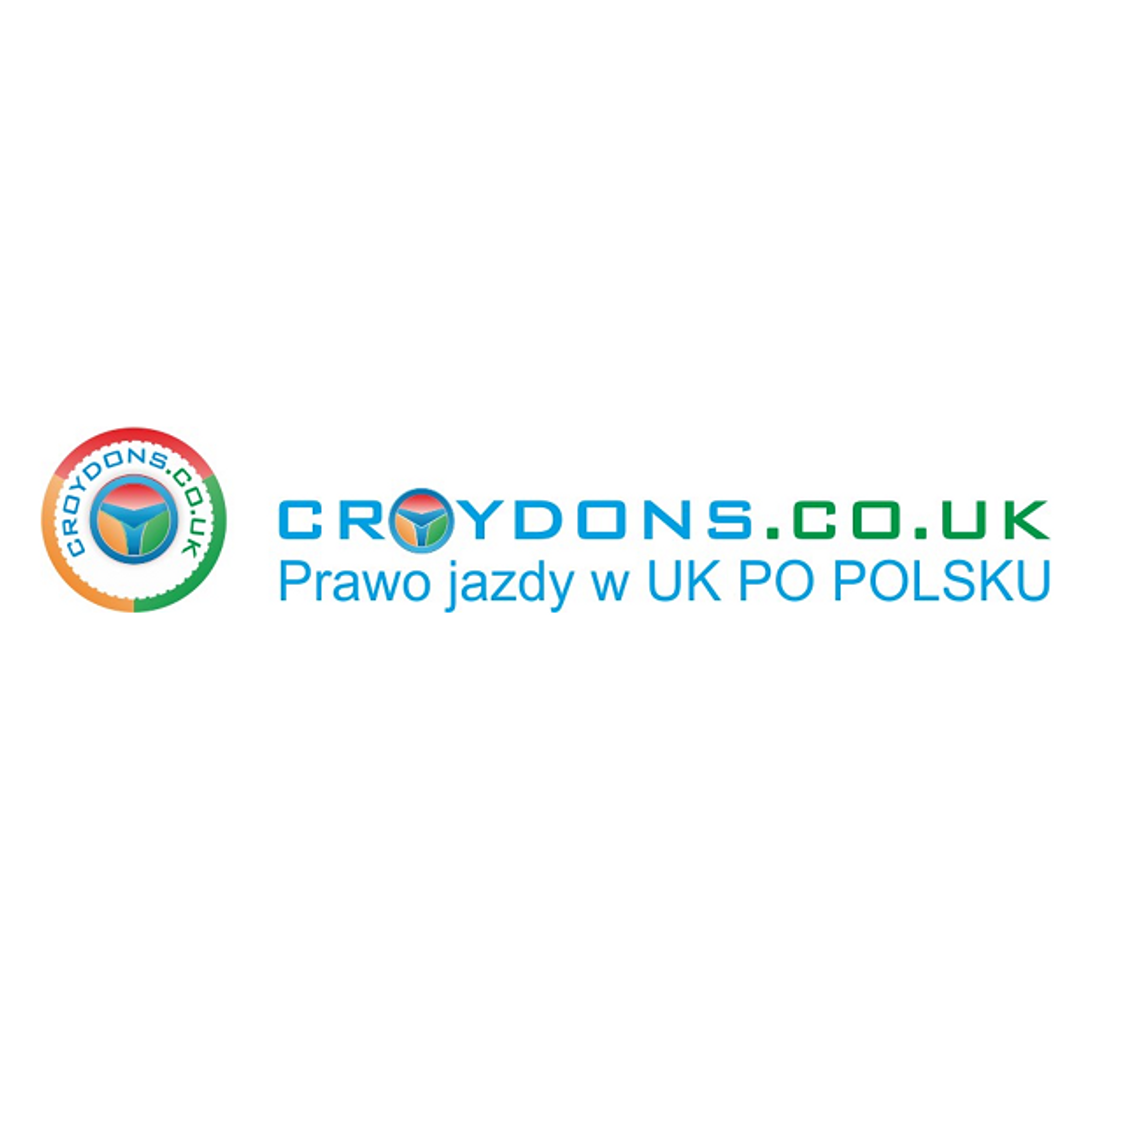 Croydons